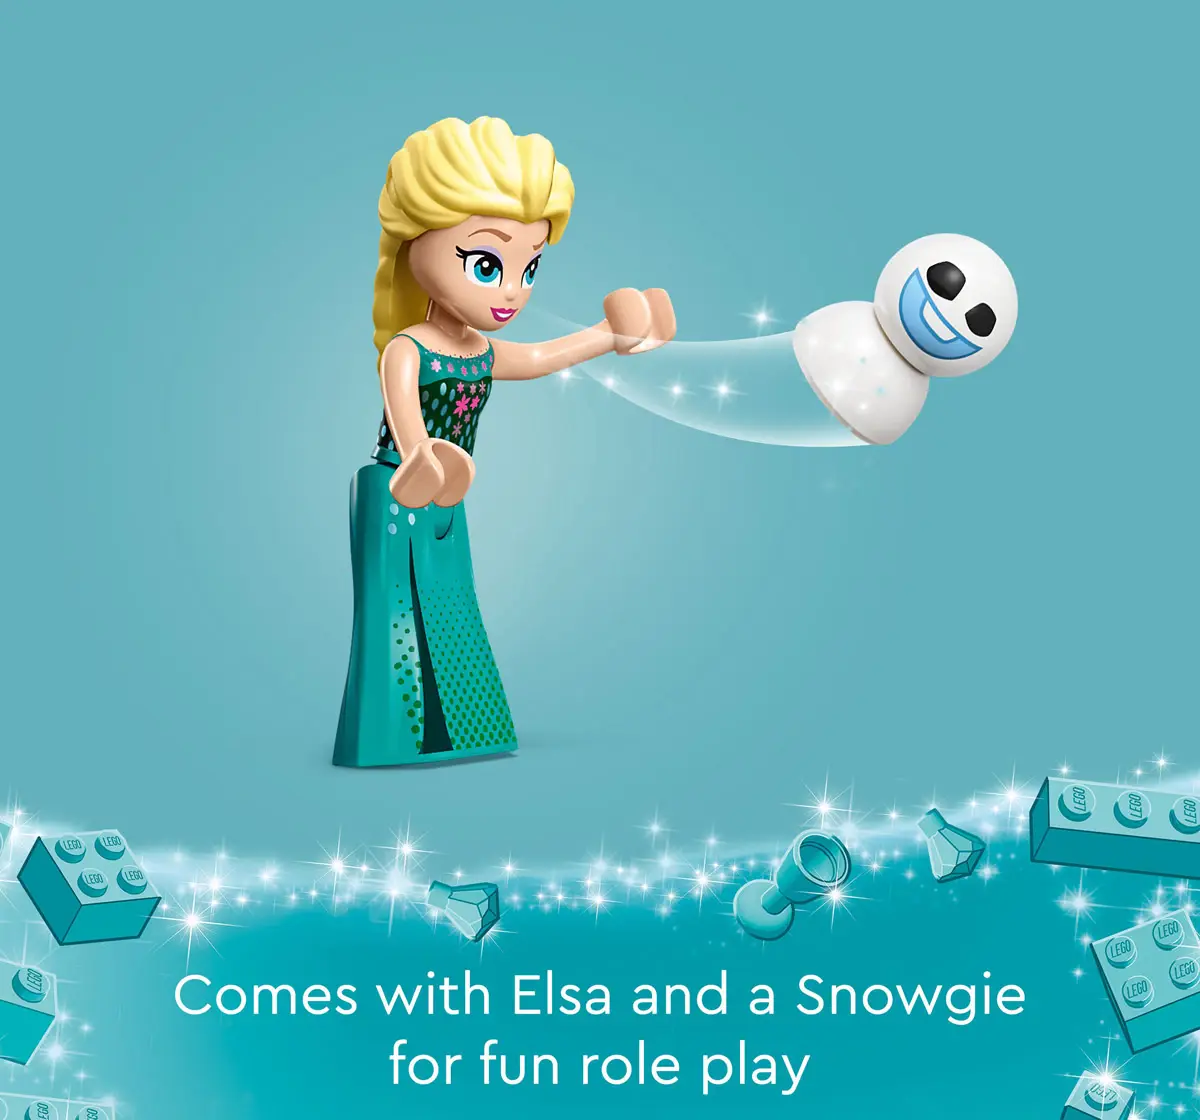 Lego Disney Frozen ElsaS Frozen Treats 43234 Multicolour For Kids Ages 5Y+ (82 Pieces) 